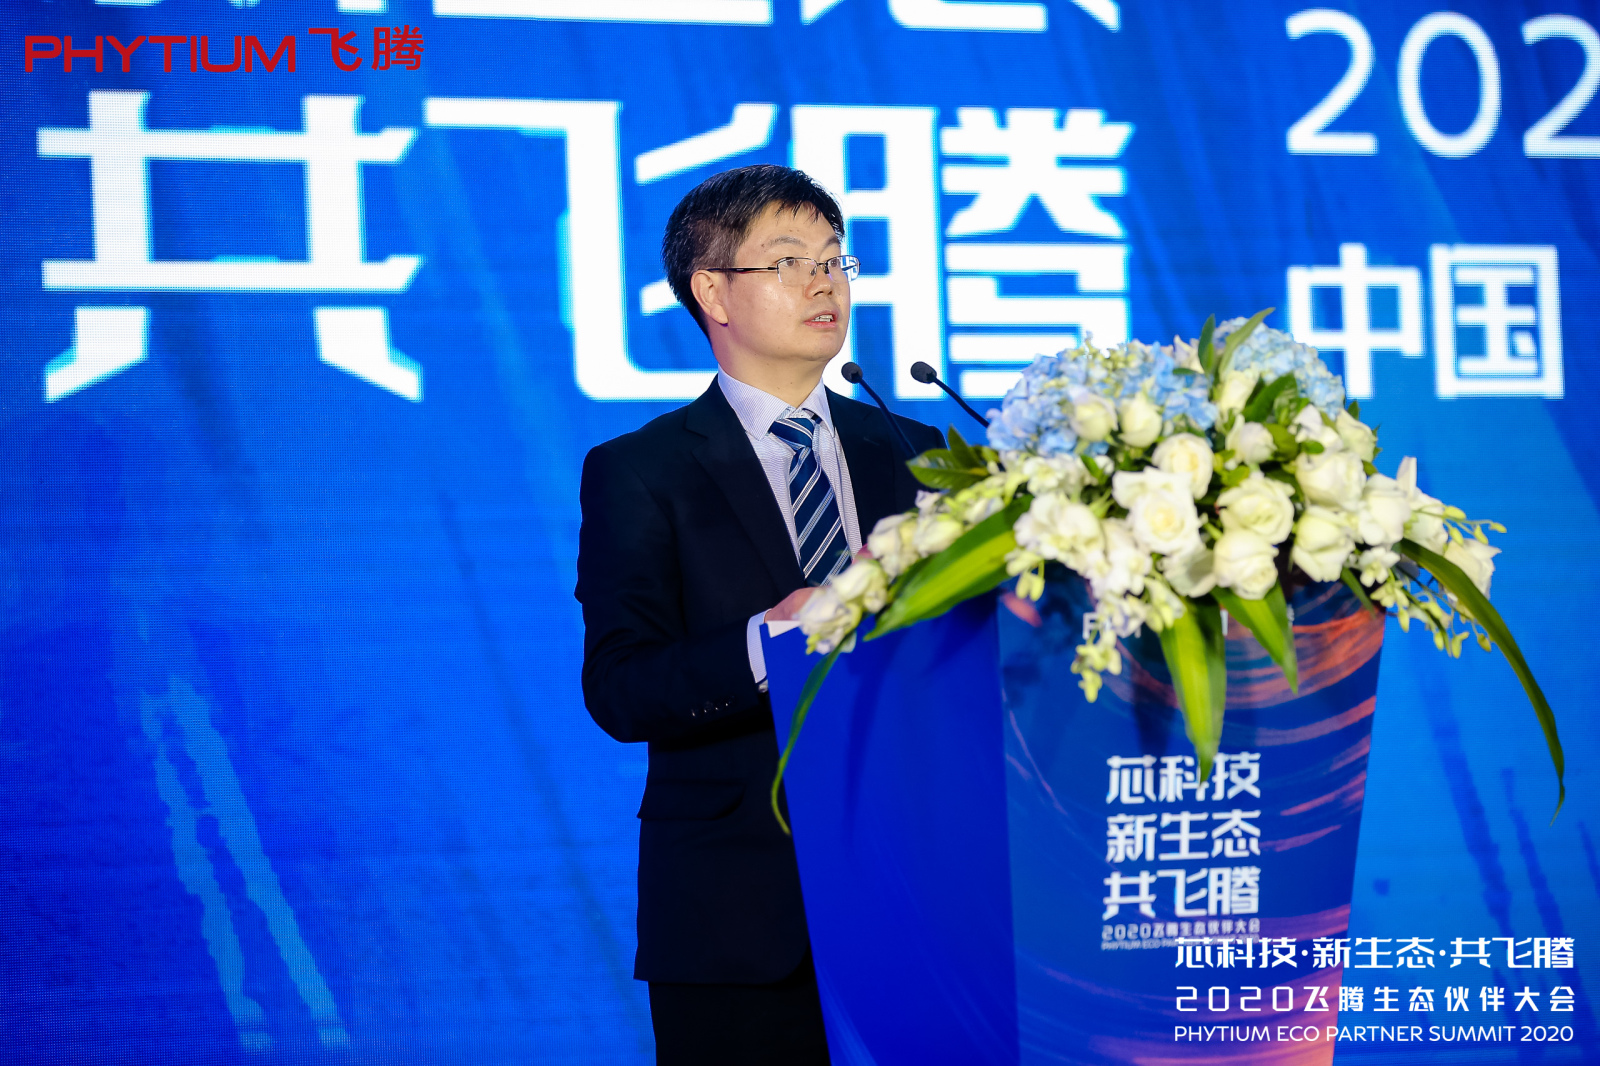 中国电子信息产业集团有限公司党组成员、副总经理陈锡明